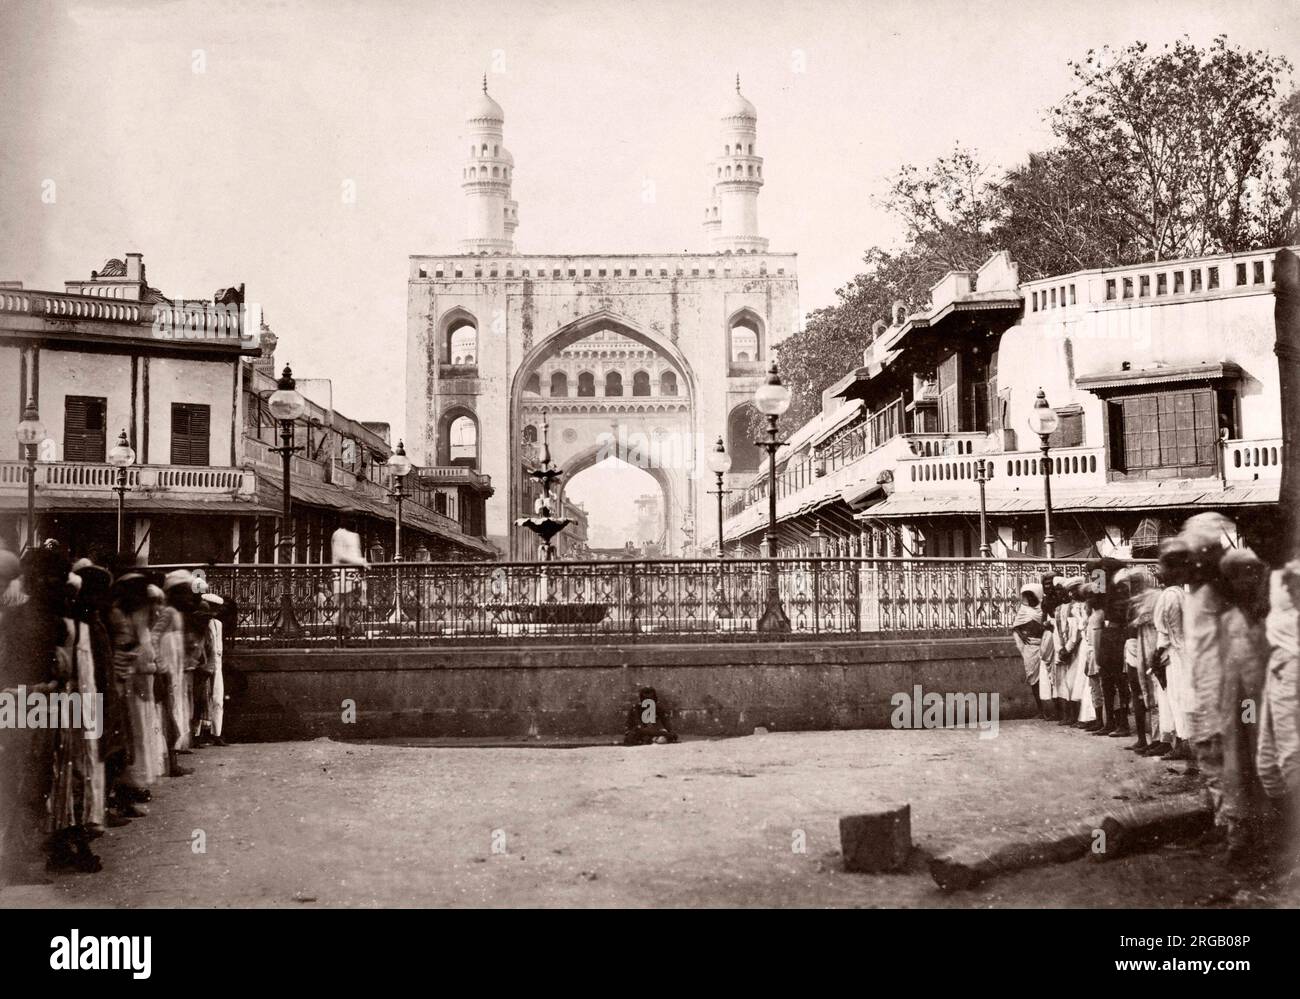 Fotografía Vintage del siglo xix, India - el Char Minar, en Hyderabad Foto de stock